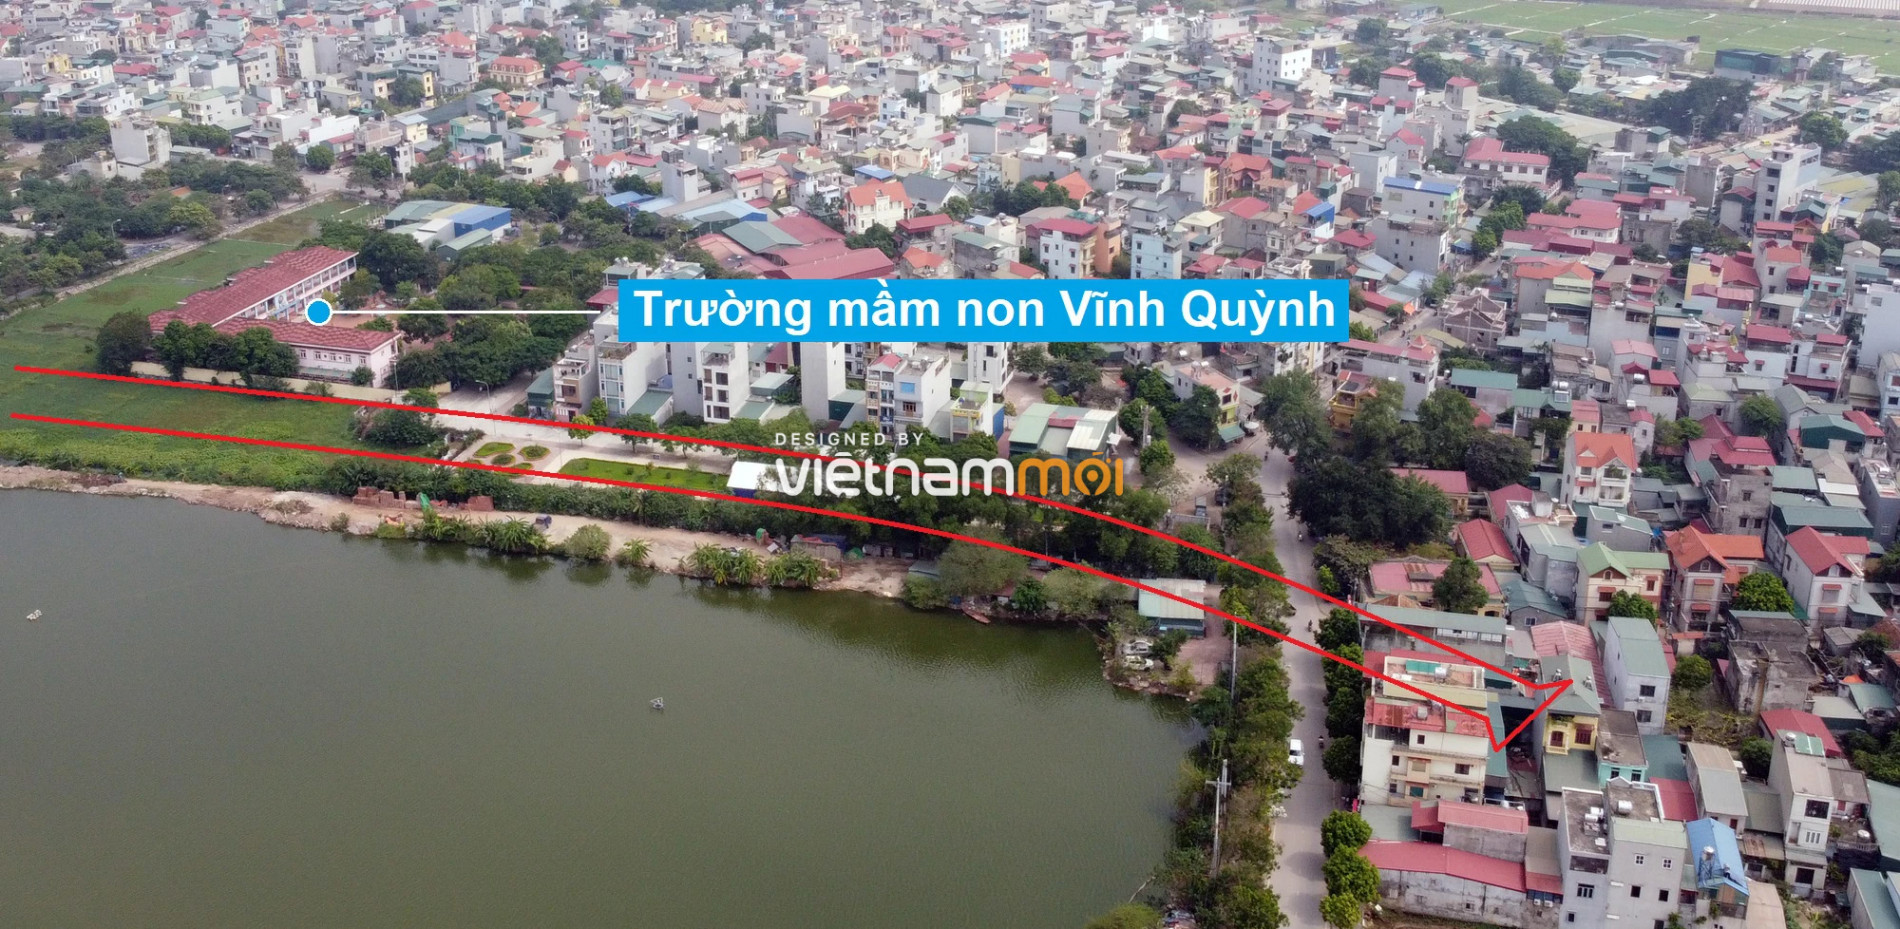 Những khu đất sắp thu hồi để mở đường ở xã Vĩnh Quỳnh, Thanh Trì, Hà Nội (phần 3) - Ảnh 6.